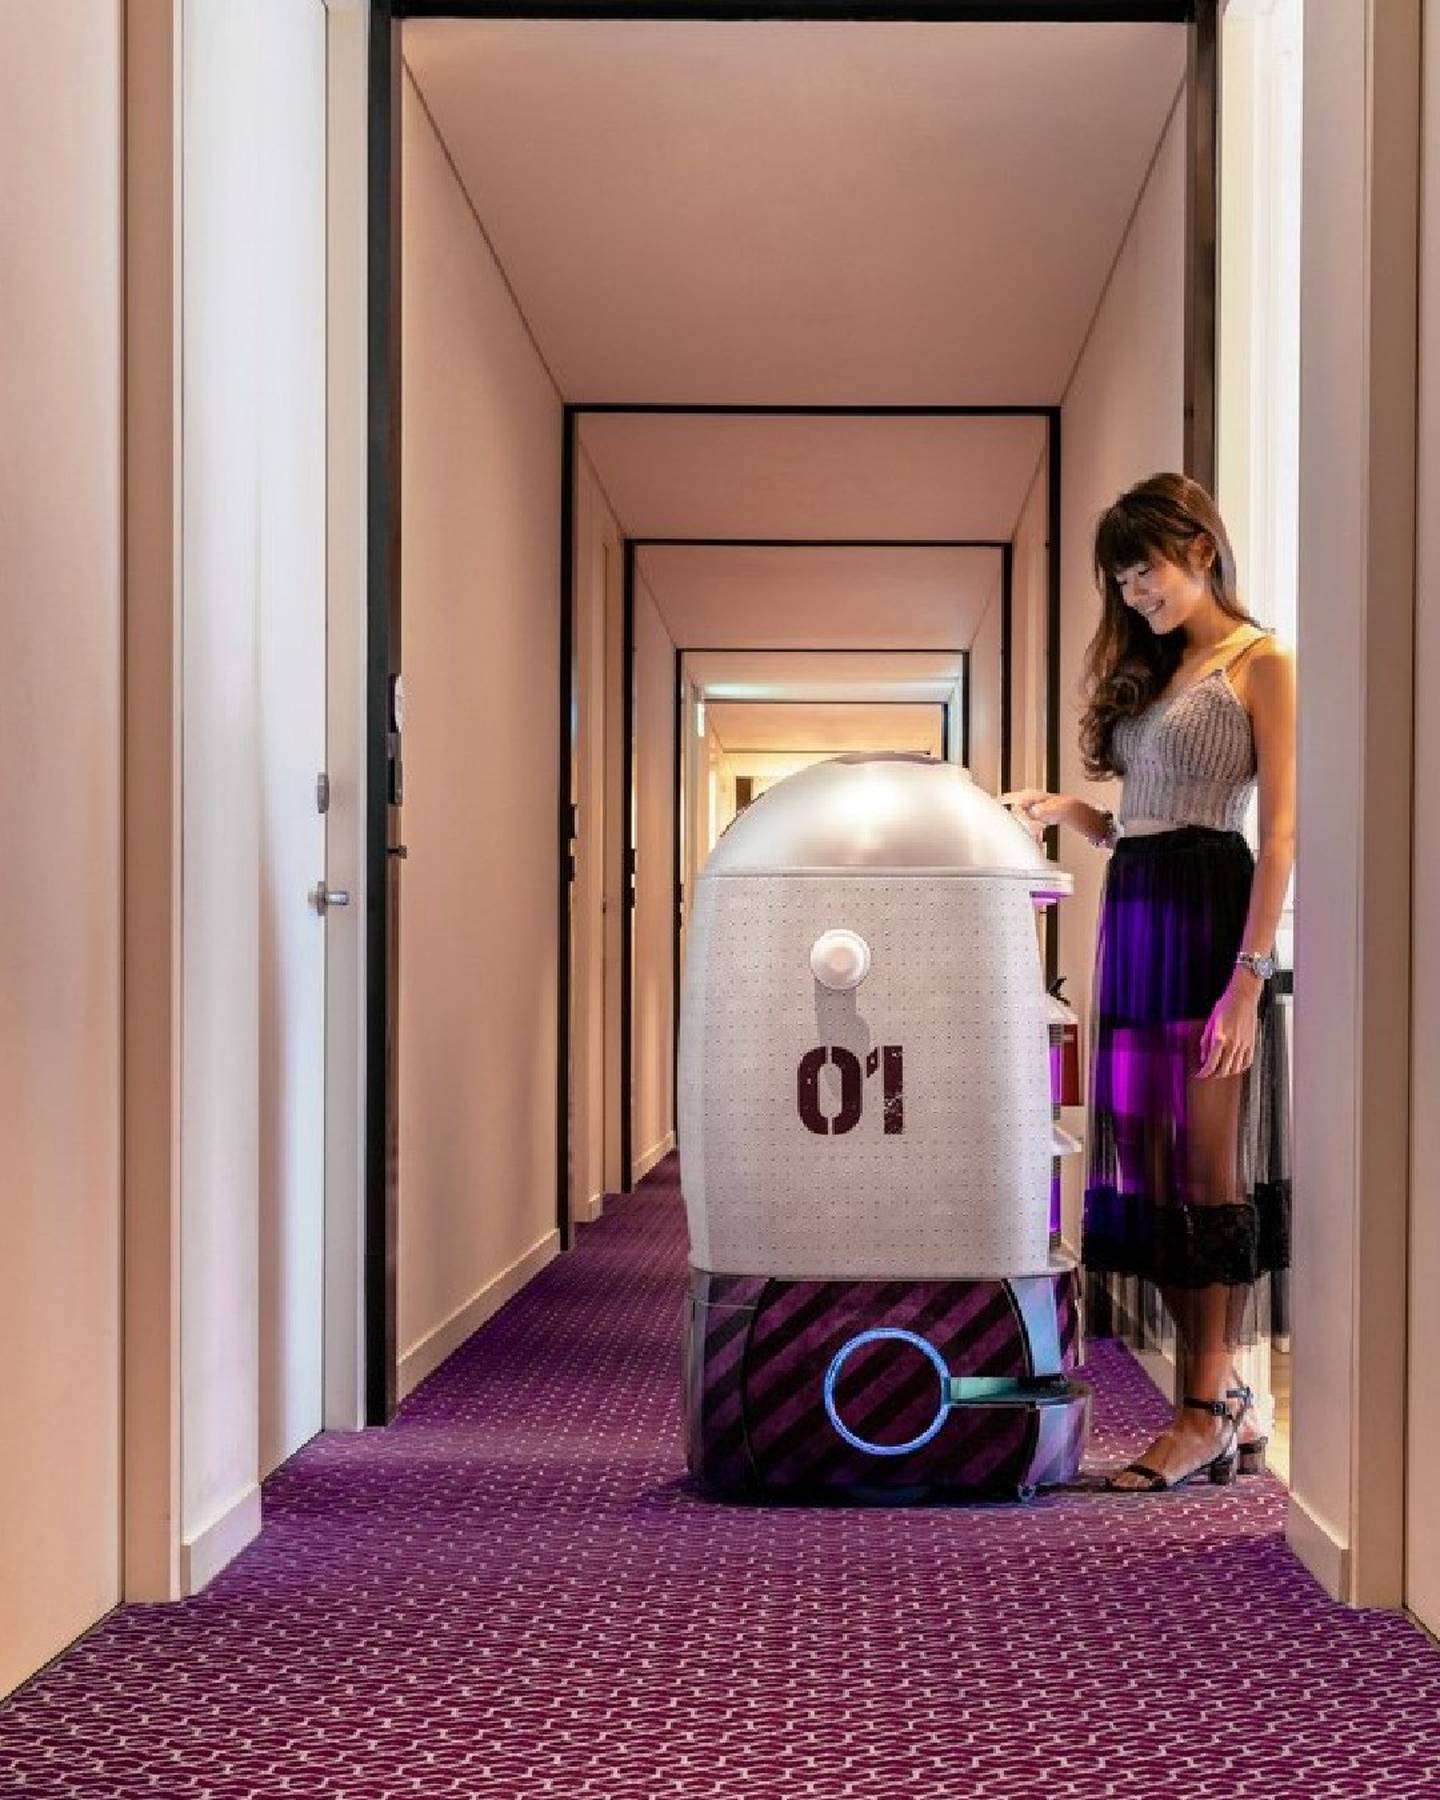 سيقدم المسافرون المقيمون في فندق Yotel Oxagon خدمة روبوت الكونسيرج.  الصورة: Yotel / Facebook